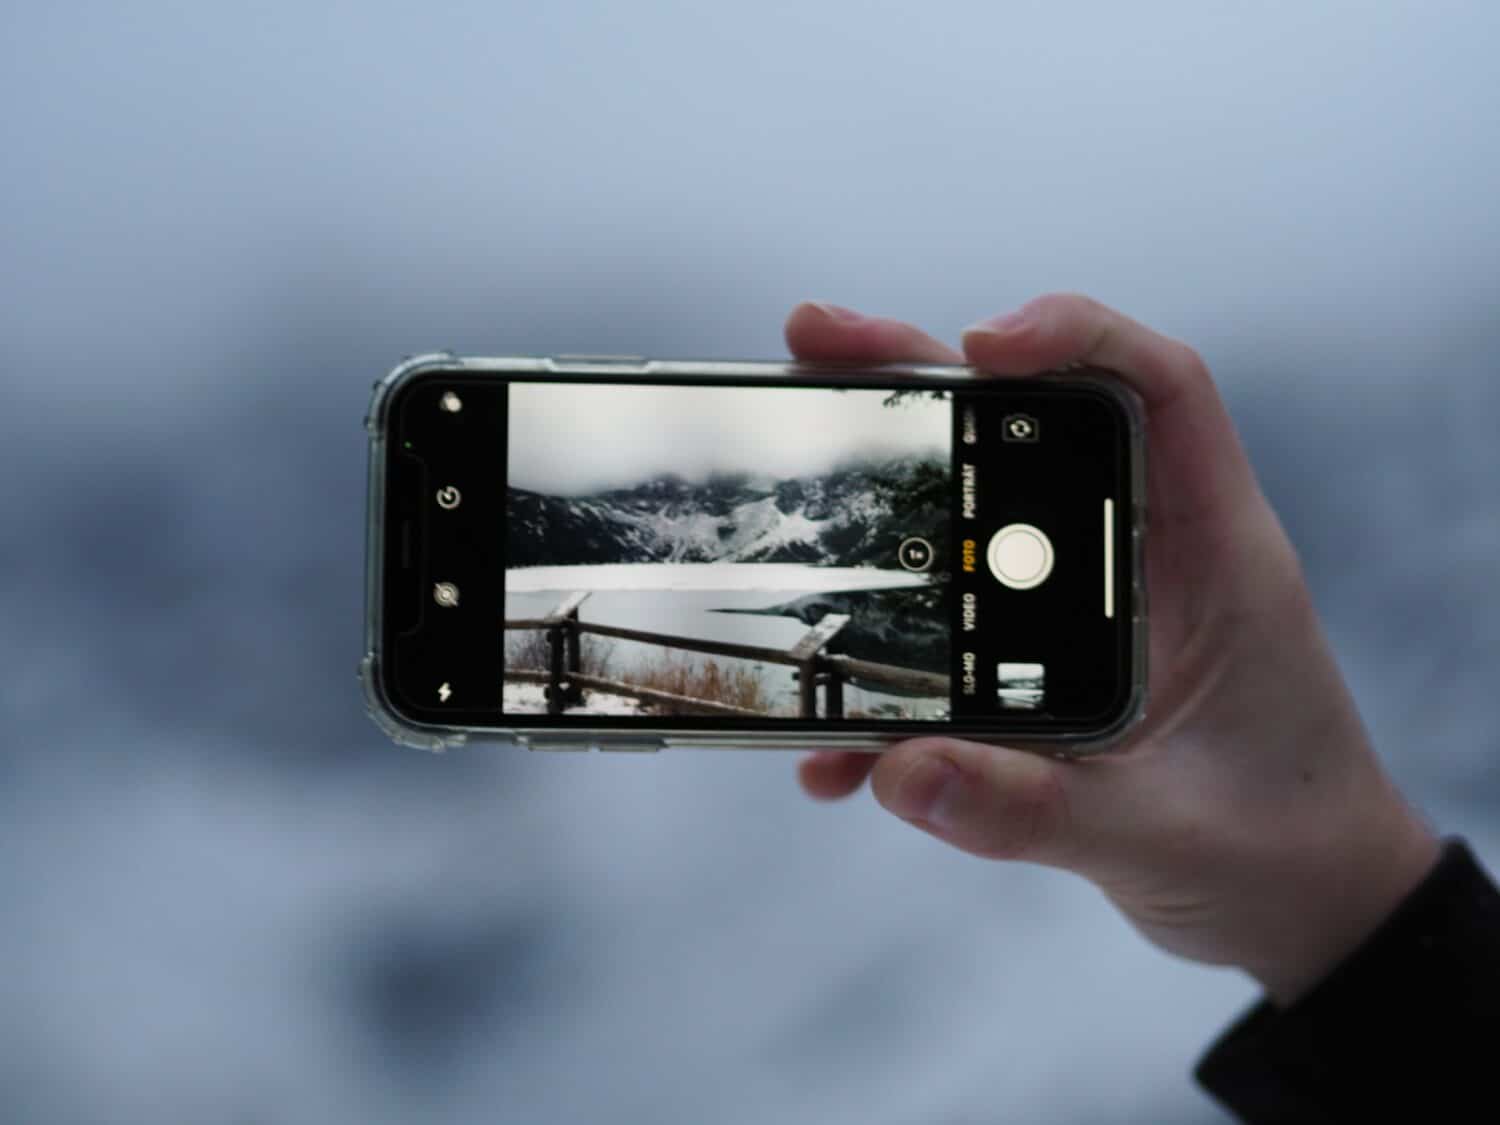 Mão branca segurando o celular e fotogrando uma região da Cracócia, composta por neve, montanha e uma pequena ponte de madeira